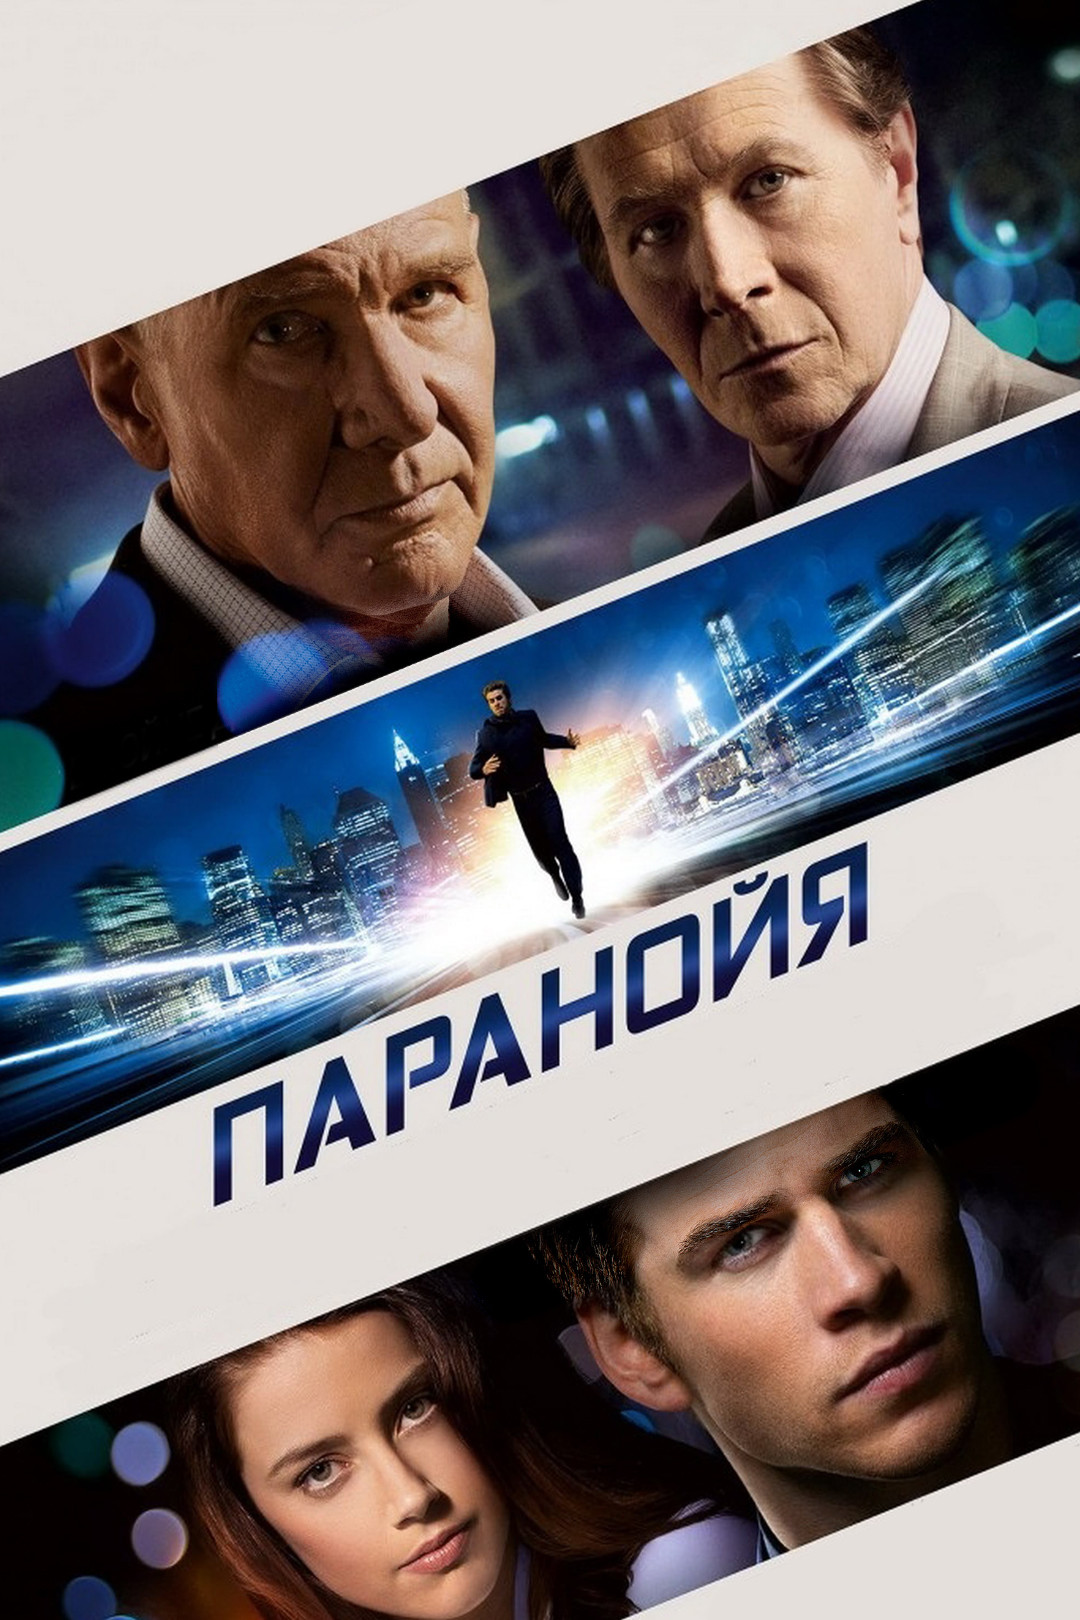 Голая правда (фильм, 2009) смотреть онлайн в хорошем качестве HD (720) /  Full HD (1080)